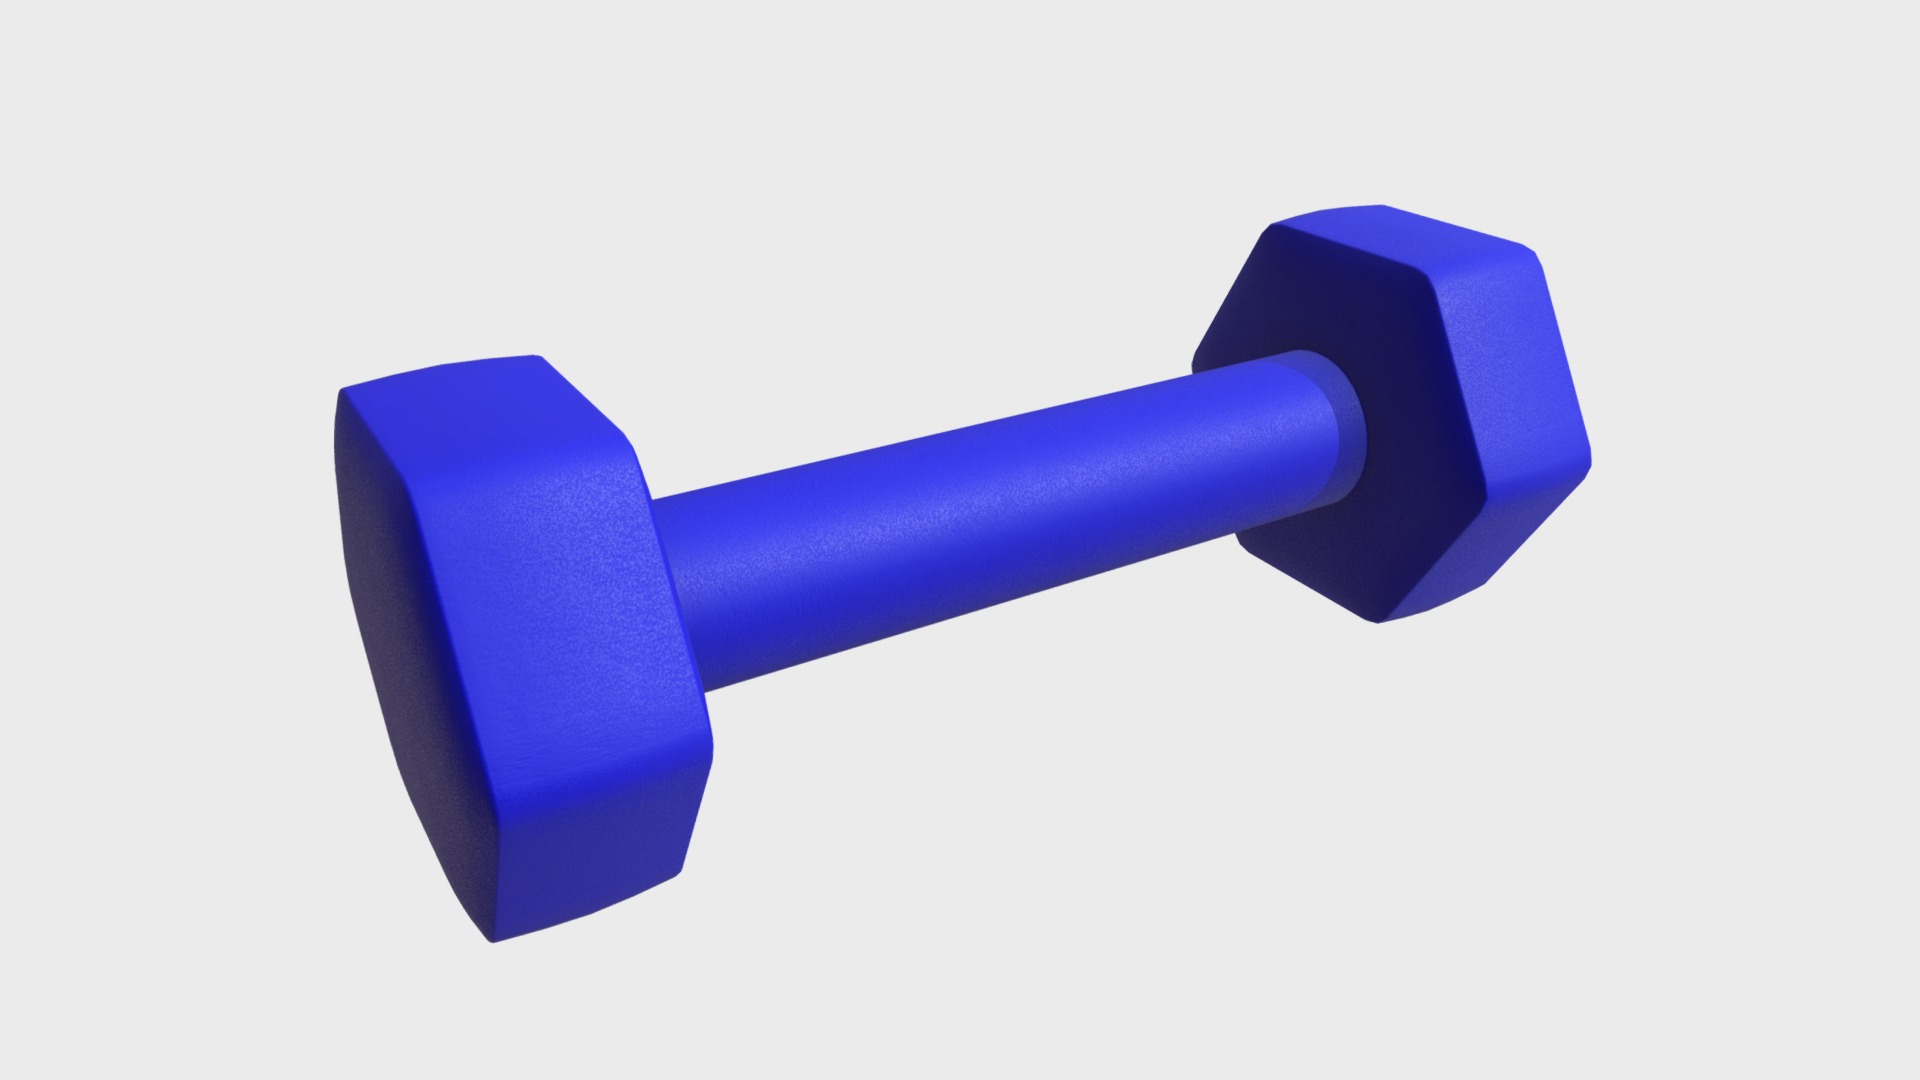 3D model Neoprene dumbbell - This is a 3D model of the Neoprene dumbbell. The 3D model is about a blue and black pen.